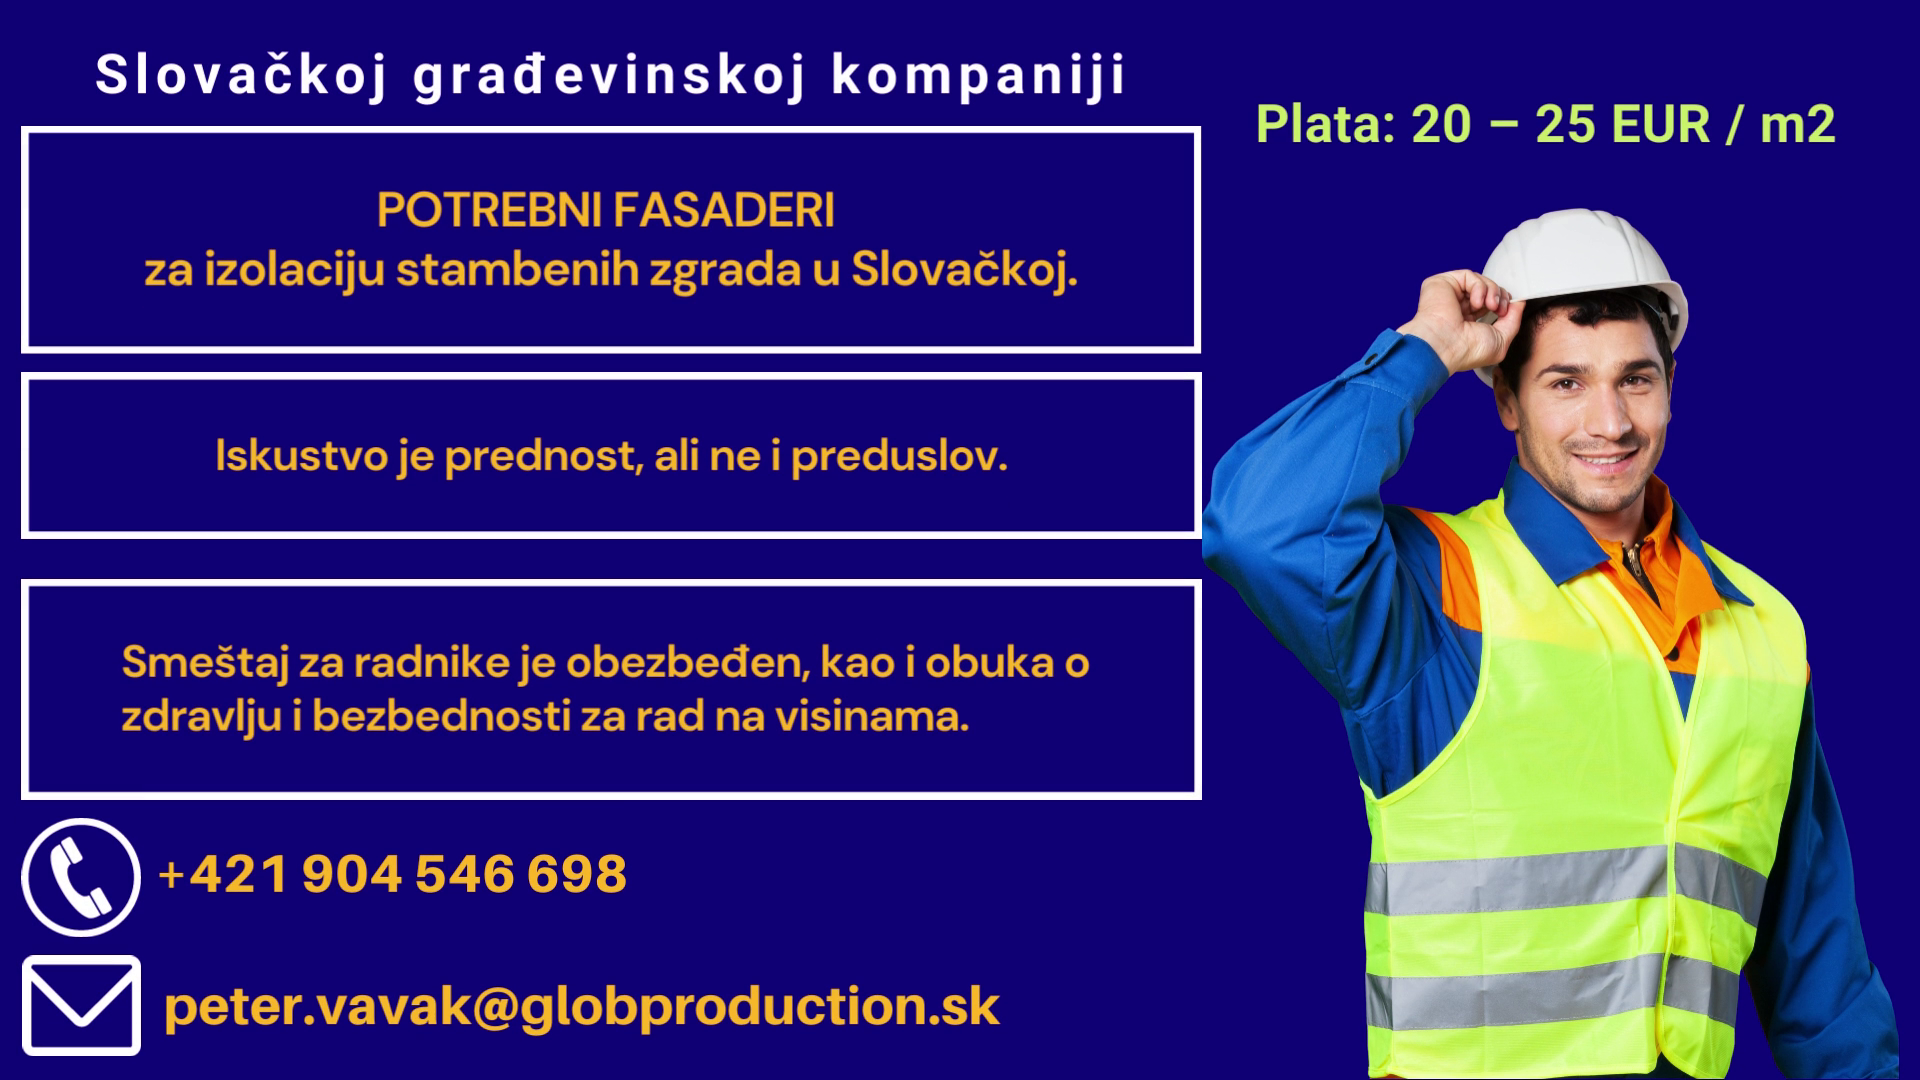 Slovačka kompanija traži građevinske radnike